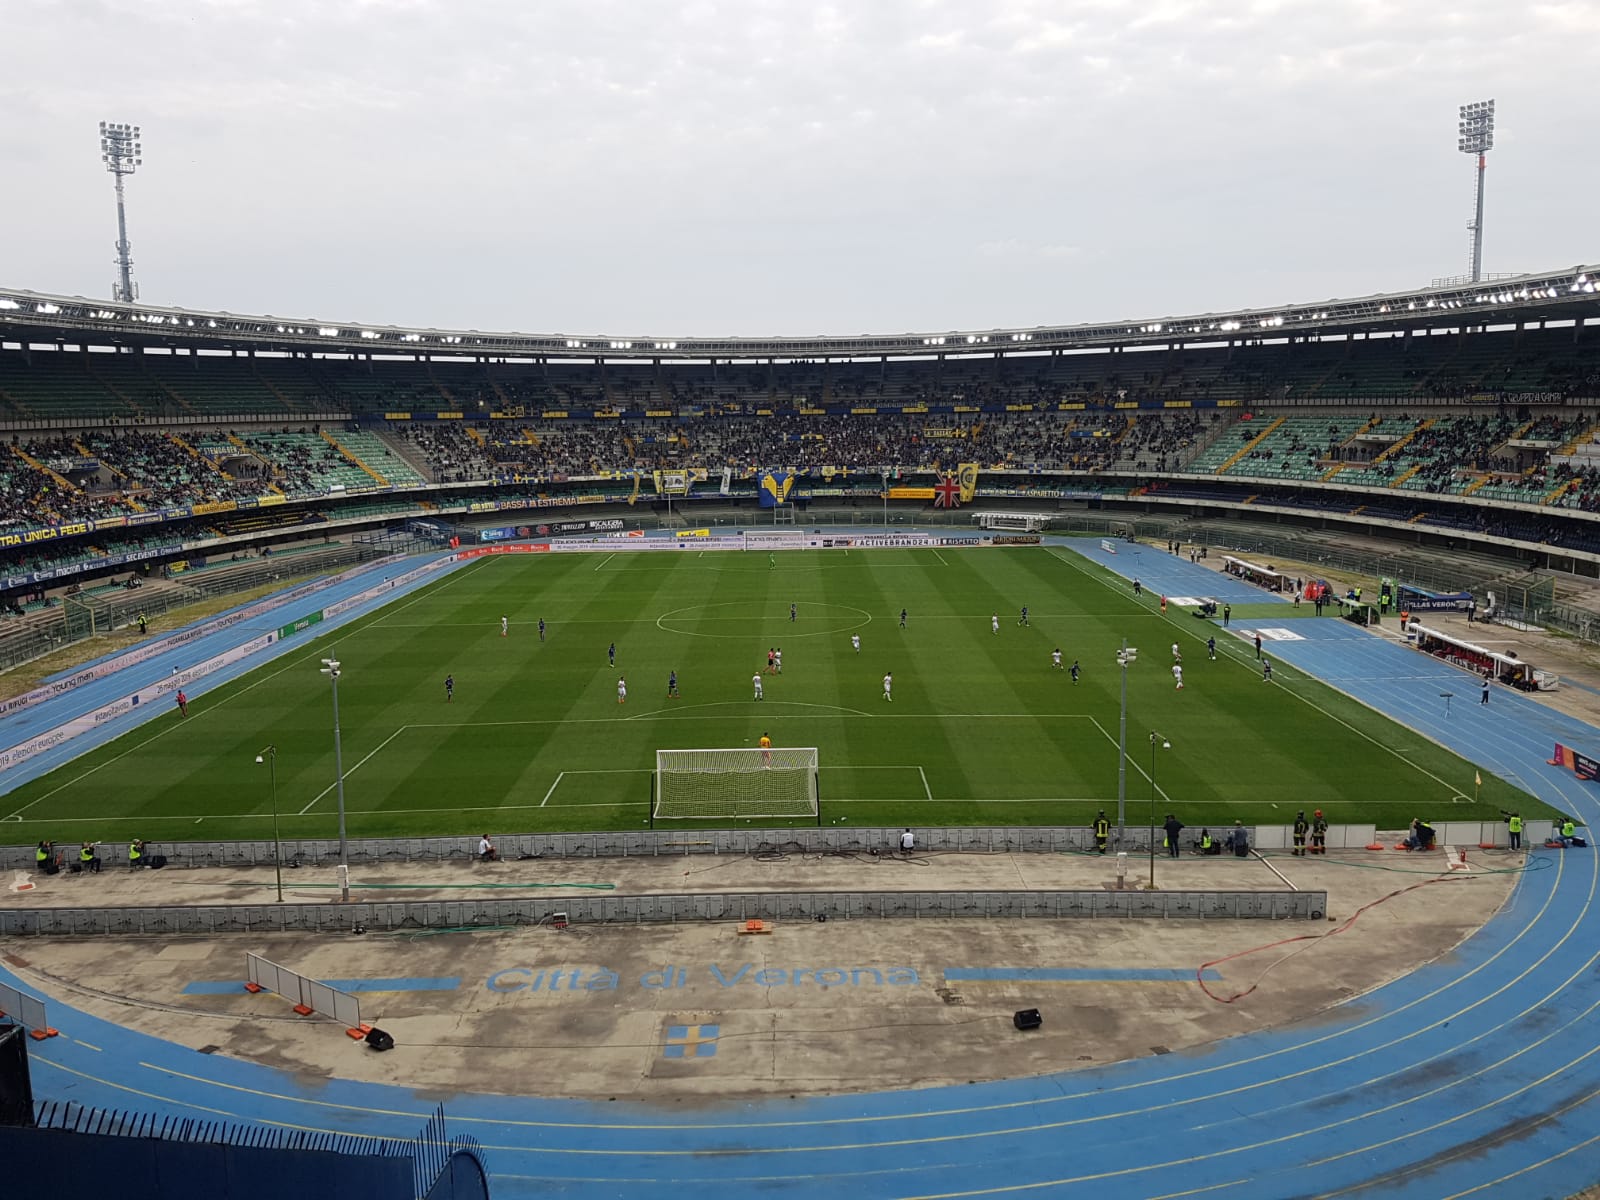 Hellas Verona-Benevento: 0-3. Coda si porta il pallone, nell’uovo tre punti Play Off